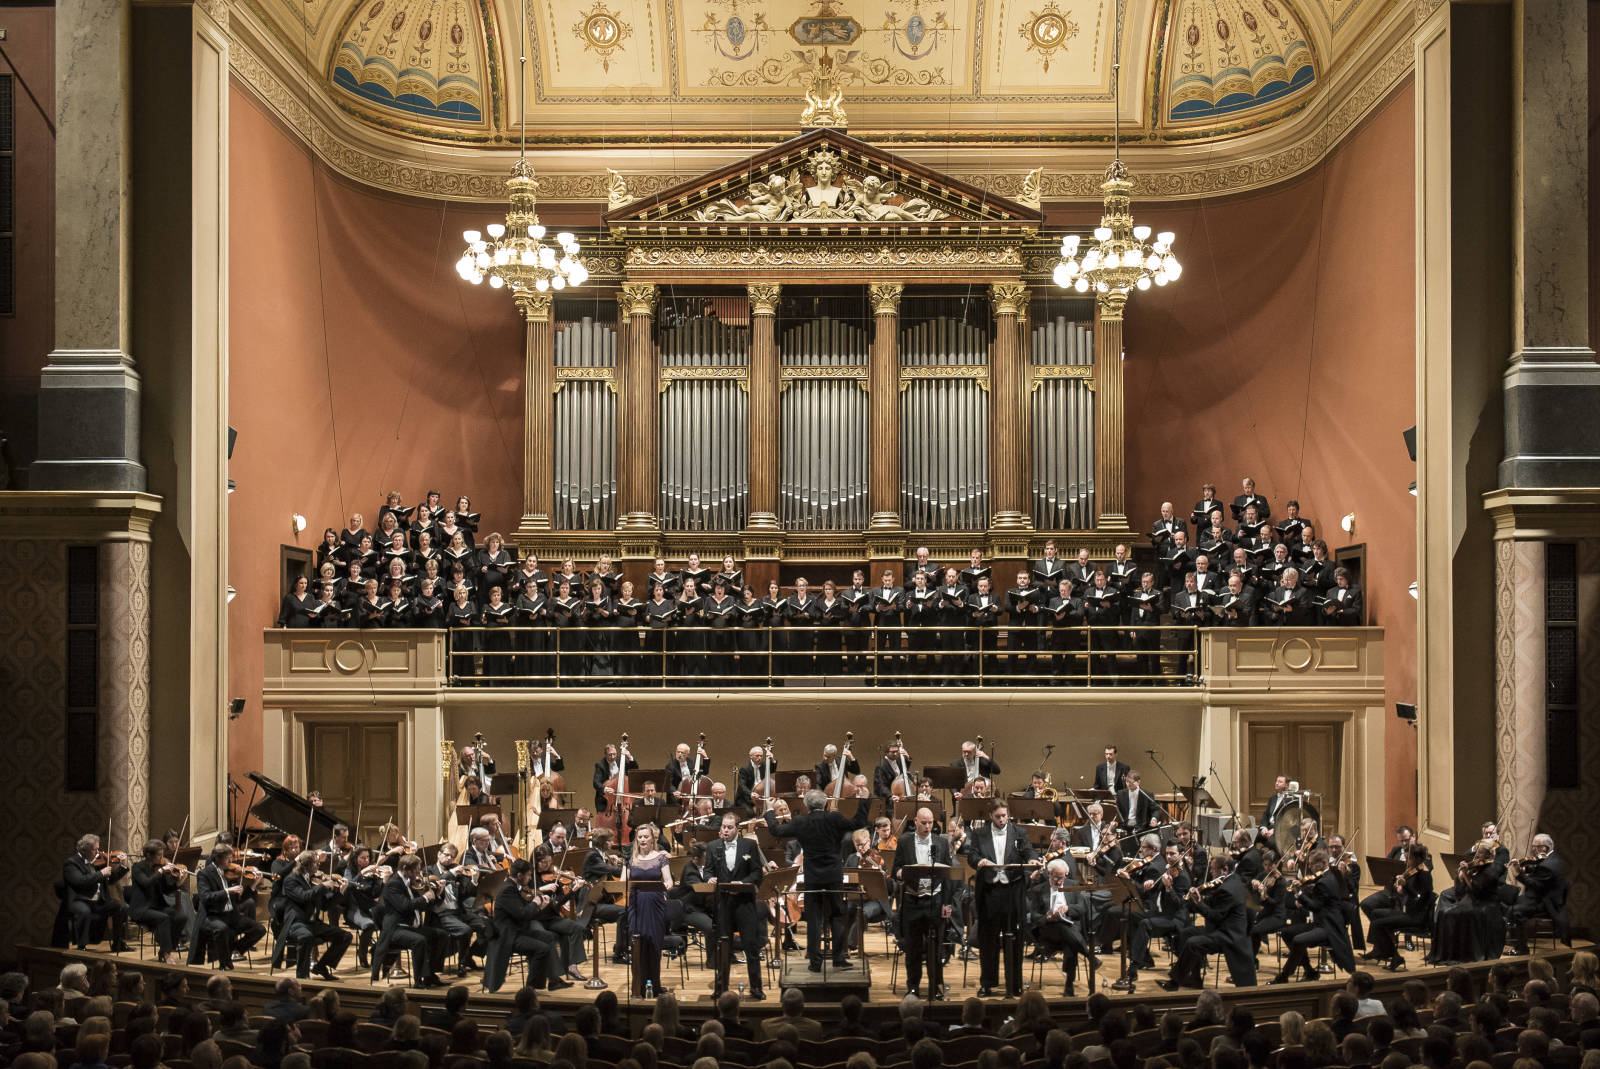 Czech Philharmonic - Orchestras